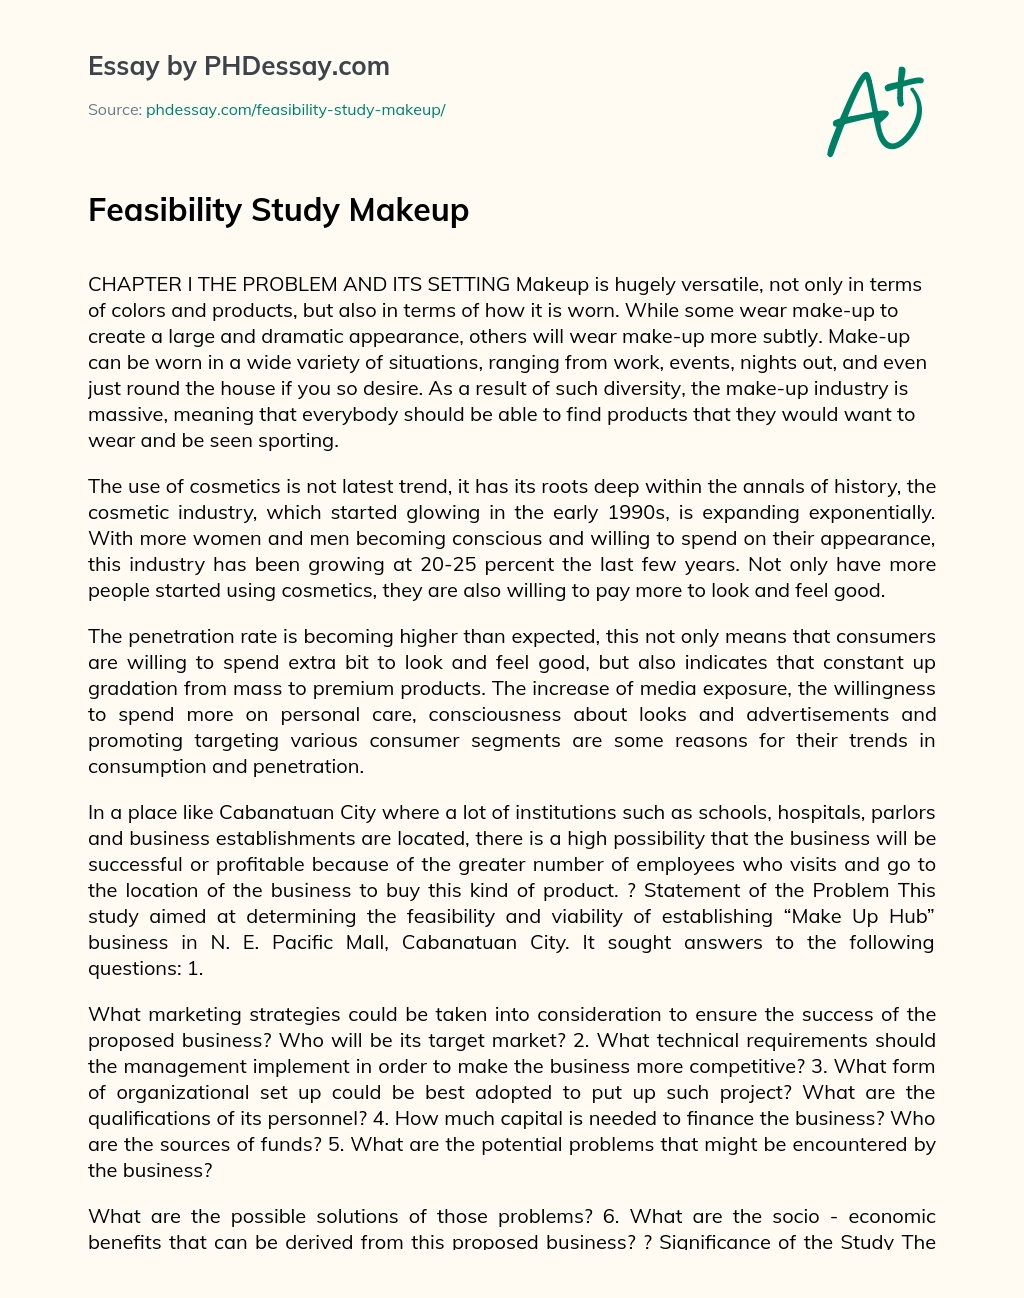 Feasibility Study Makeup essay